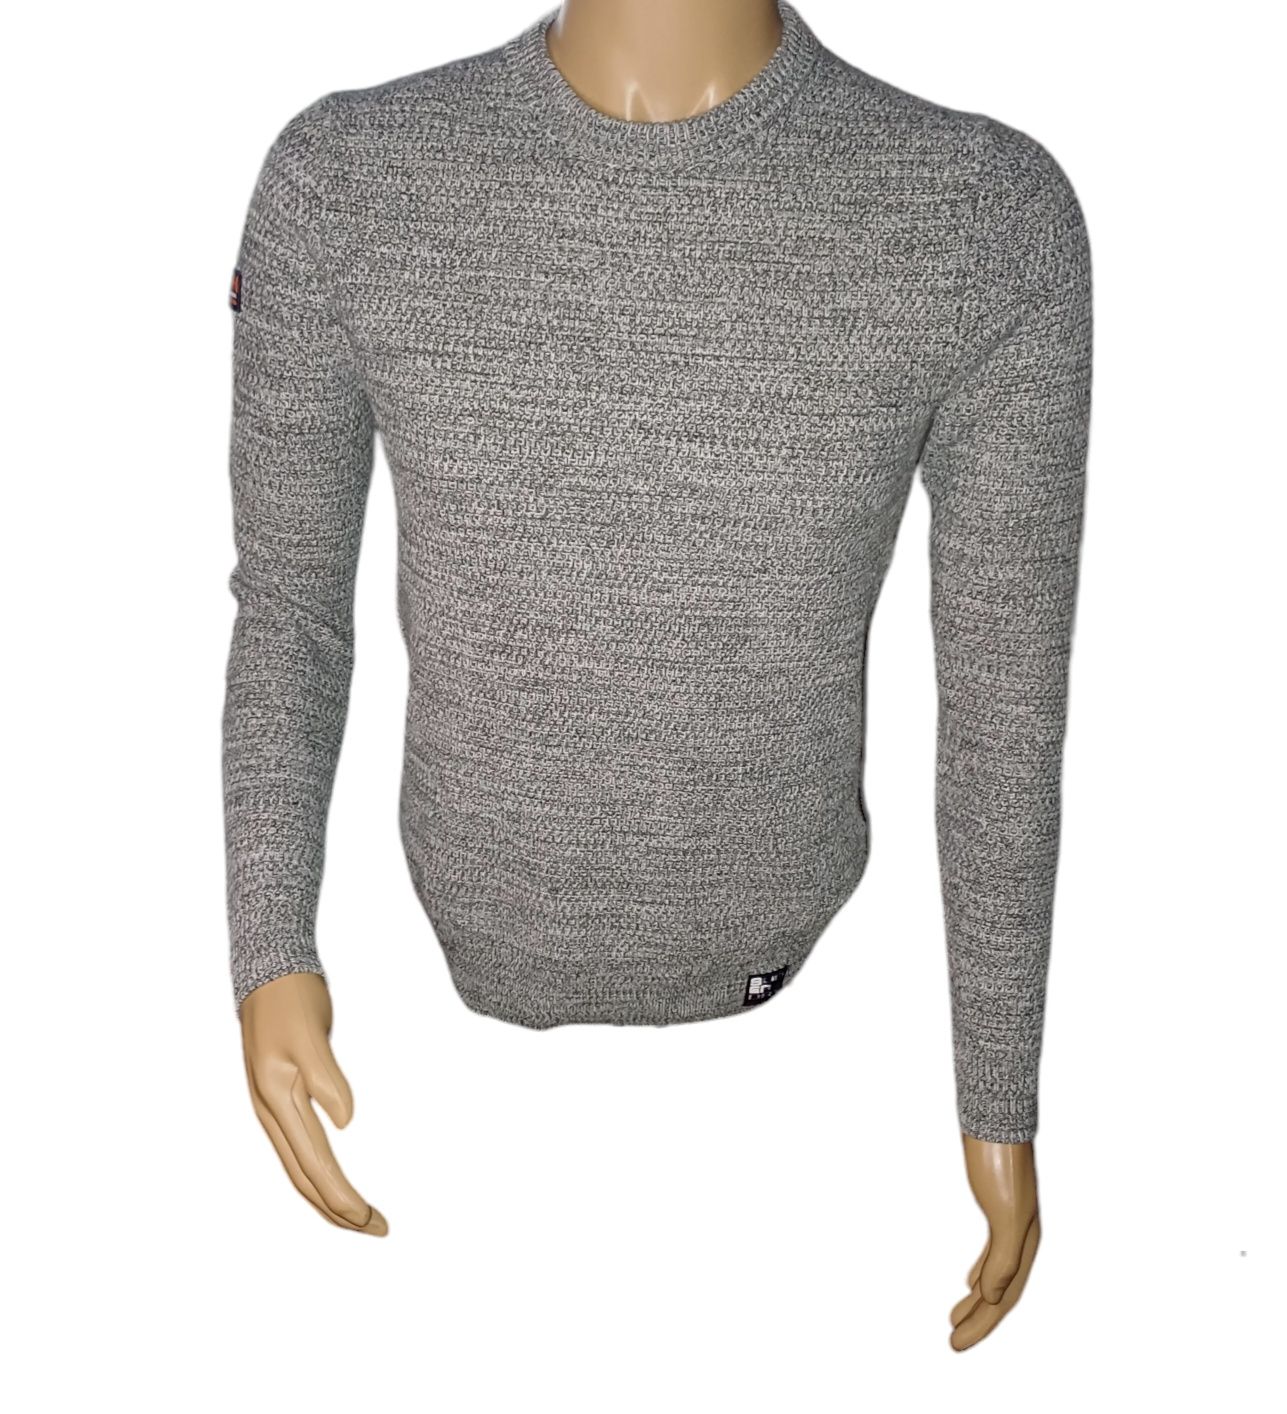 Sweterek męski bawełniany Superdry rozmiar S